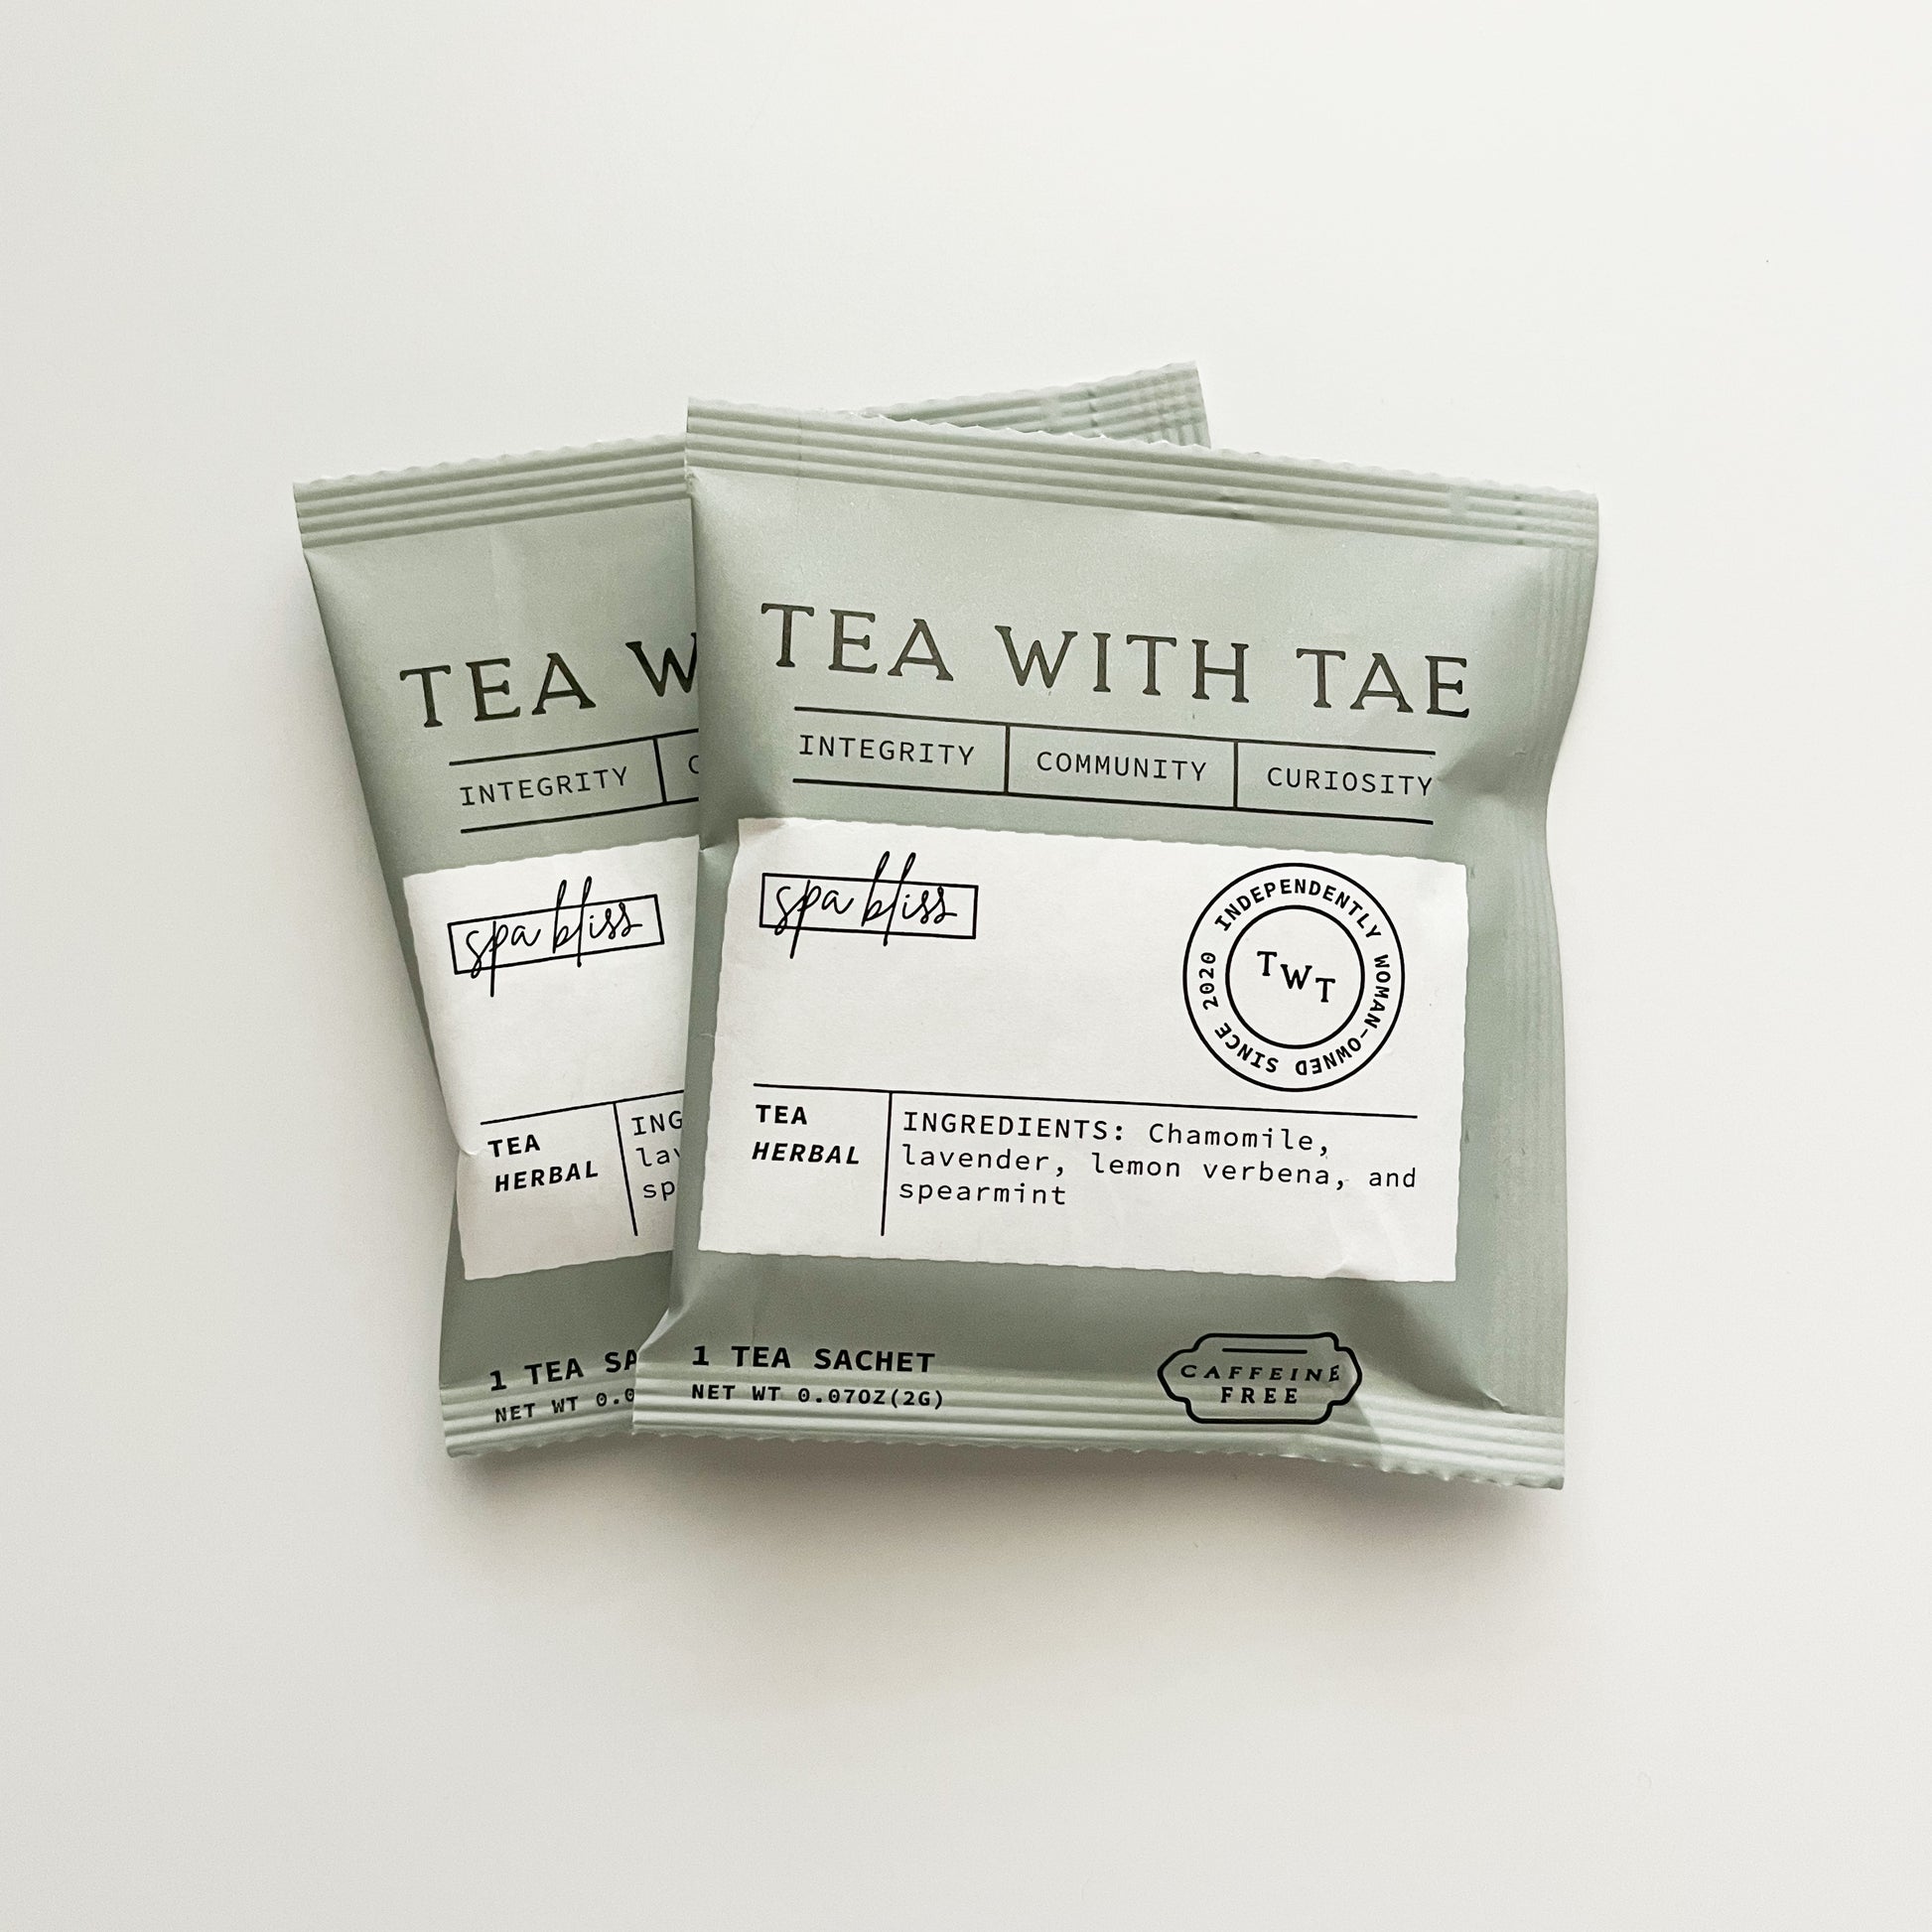 Tea with Tae - Spa Bliss, 2 tea sachets